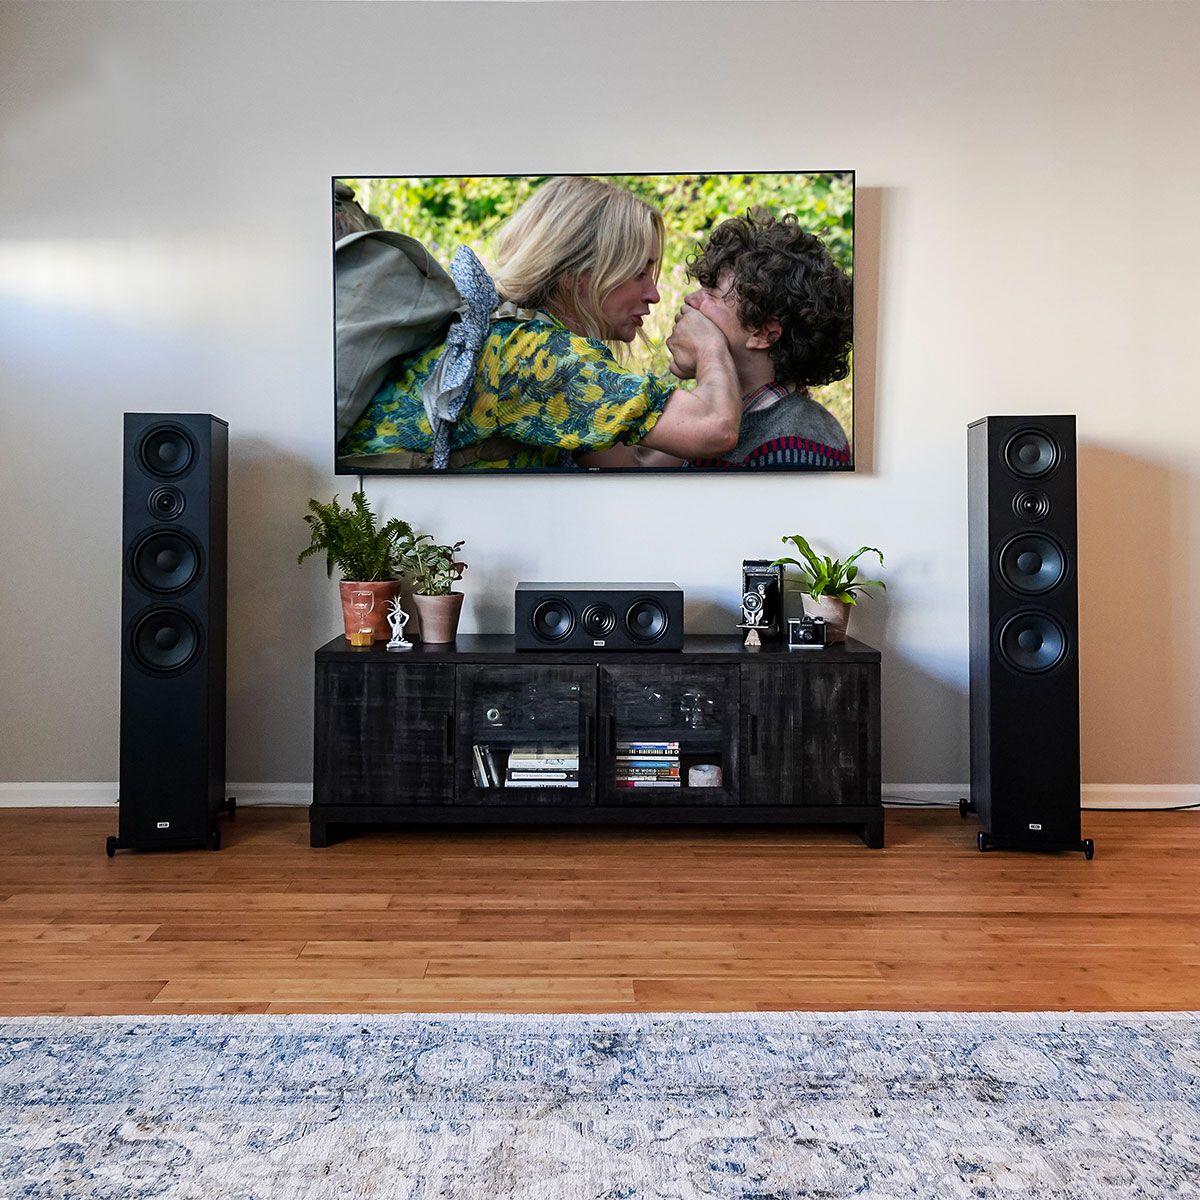 Heco Aurora 1000 Tower Speakers in living room setup